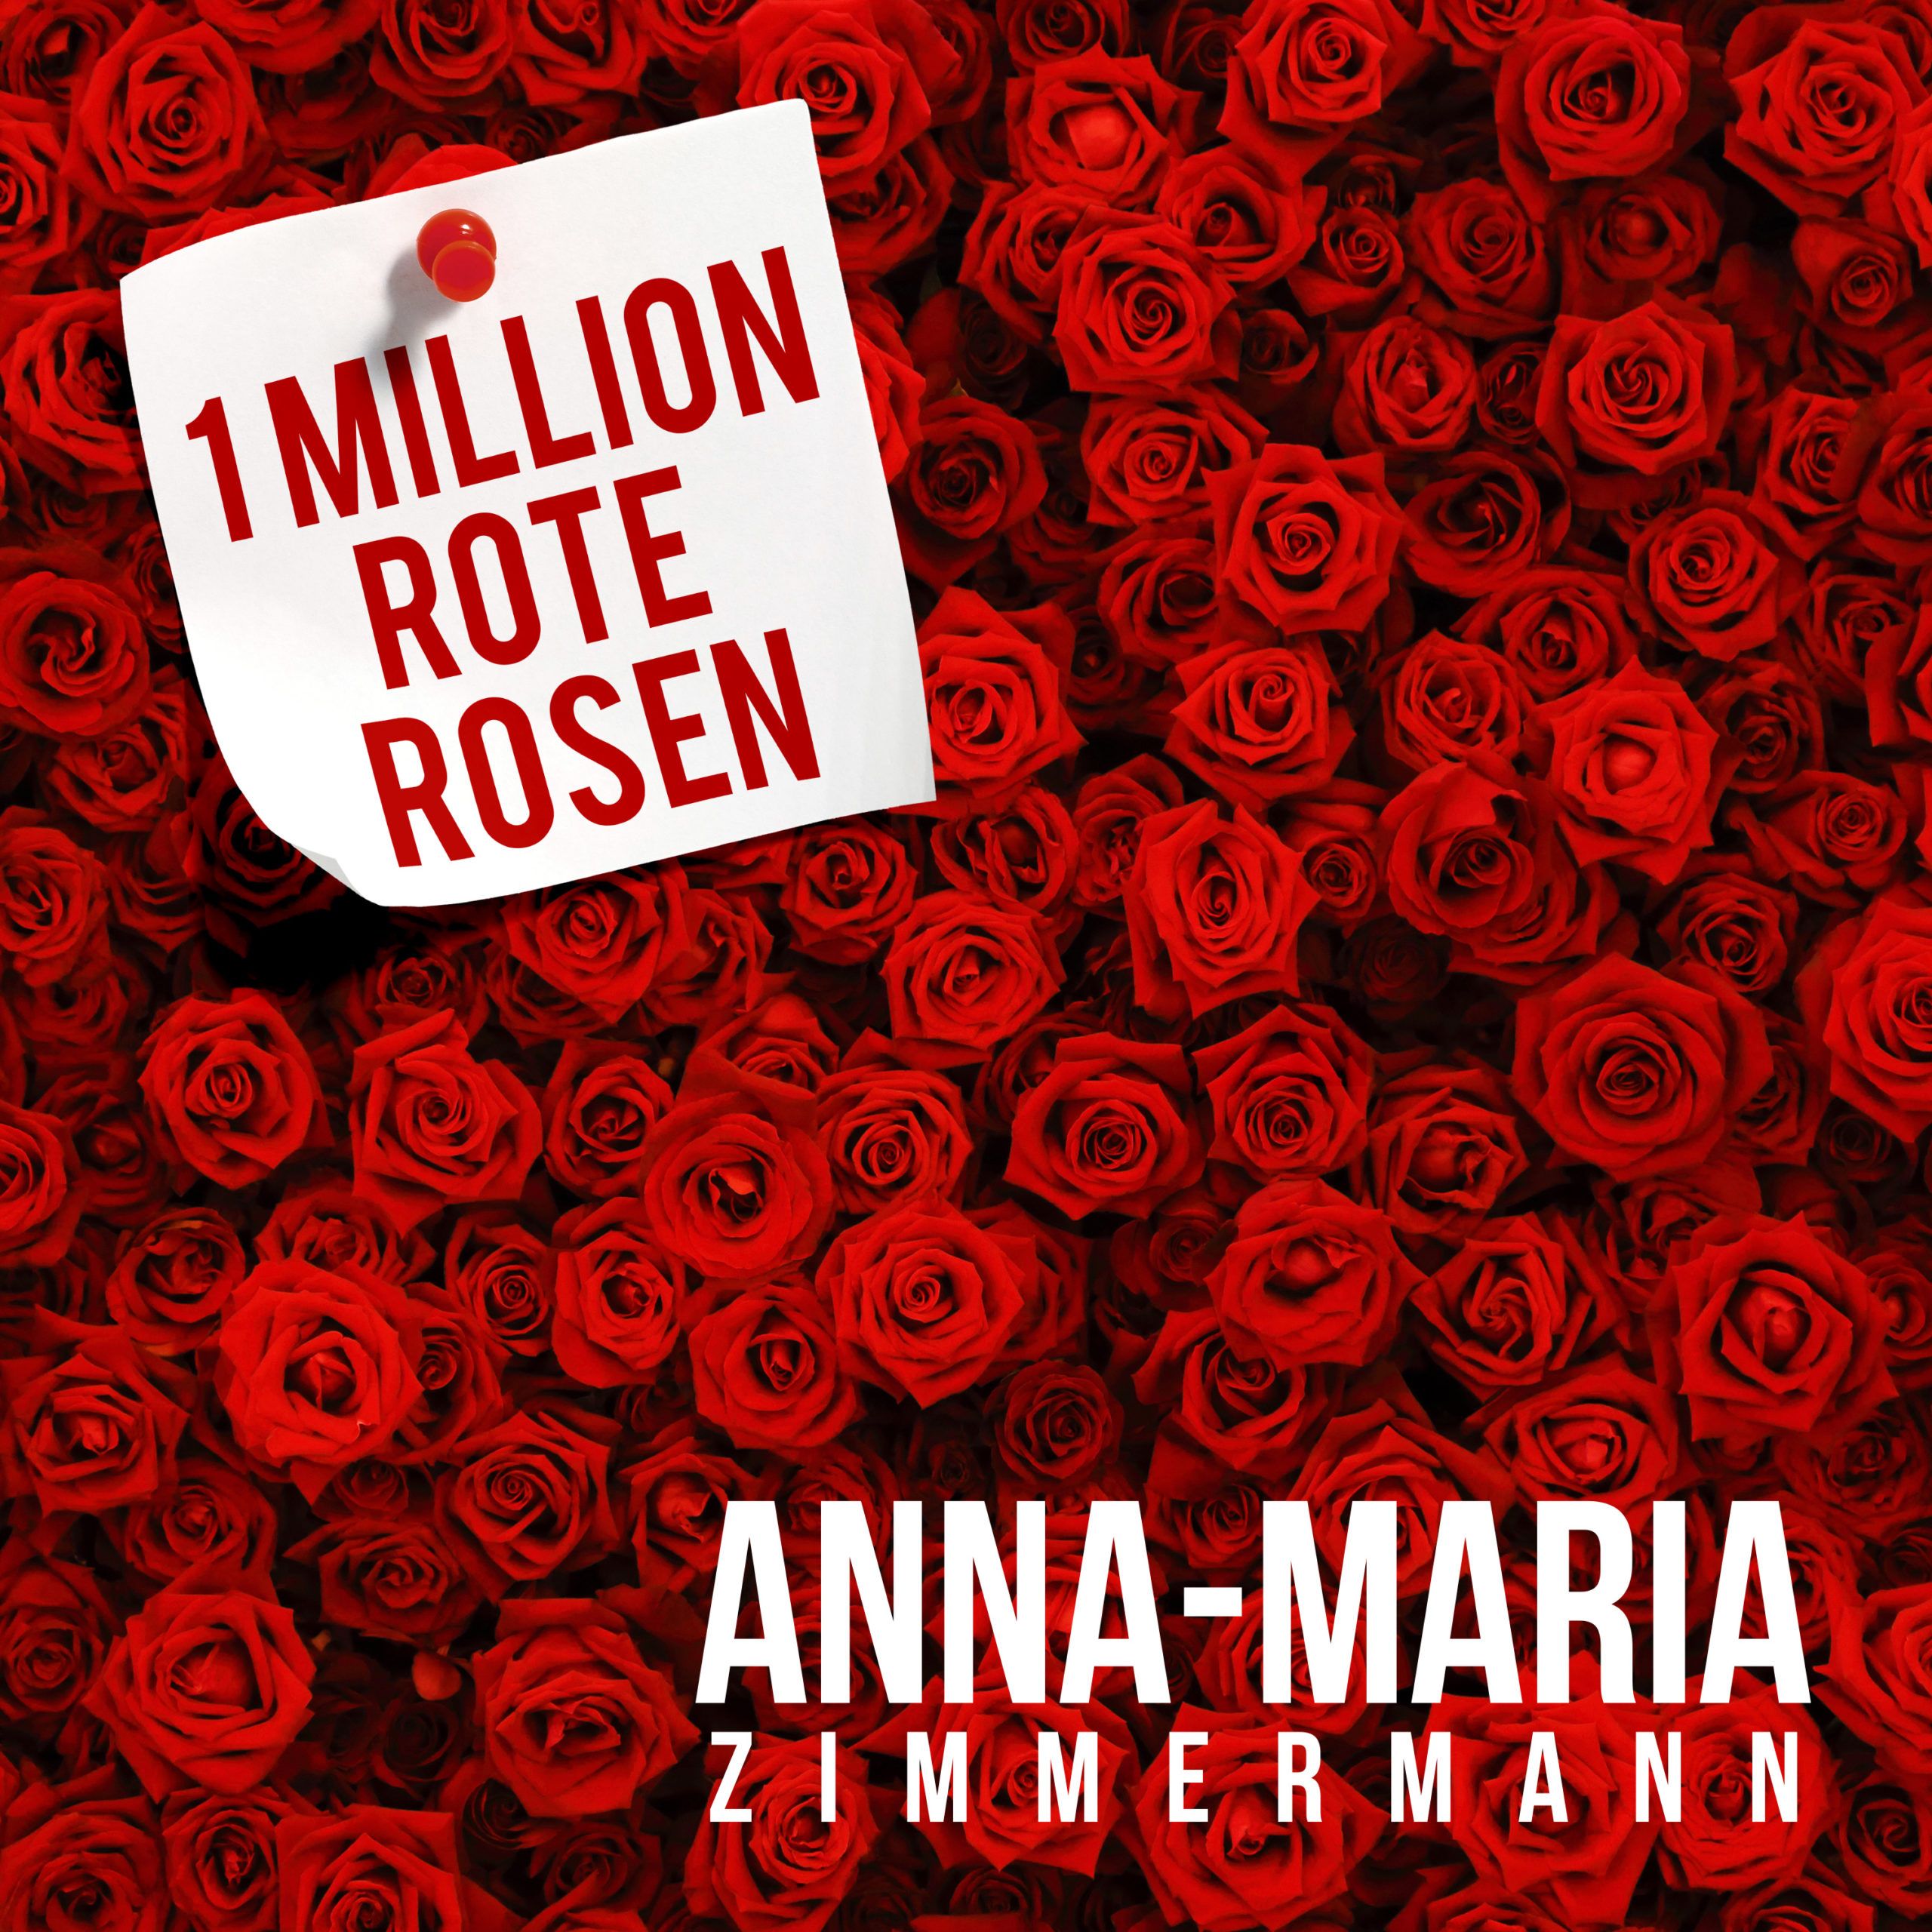  Rote Rosen Hintergrundbild 2560x2560. ANNA MARIA ZIMMERMANN Mit Dem Song “1 Million Rote Rosen” Bleibt Sie Ihren Zahlenspiegel Treu!